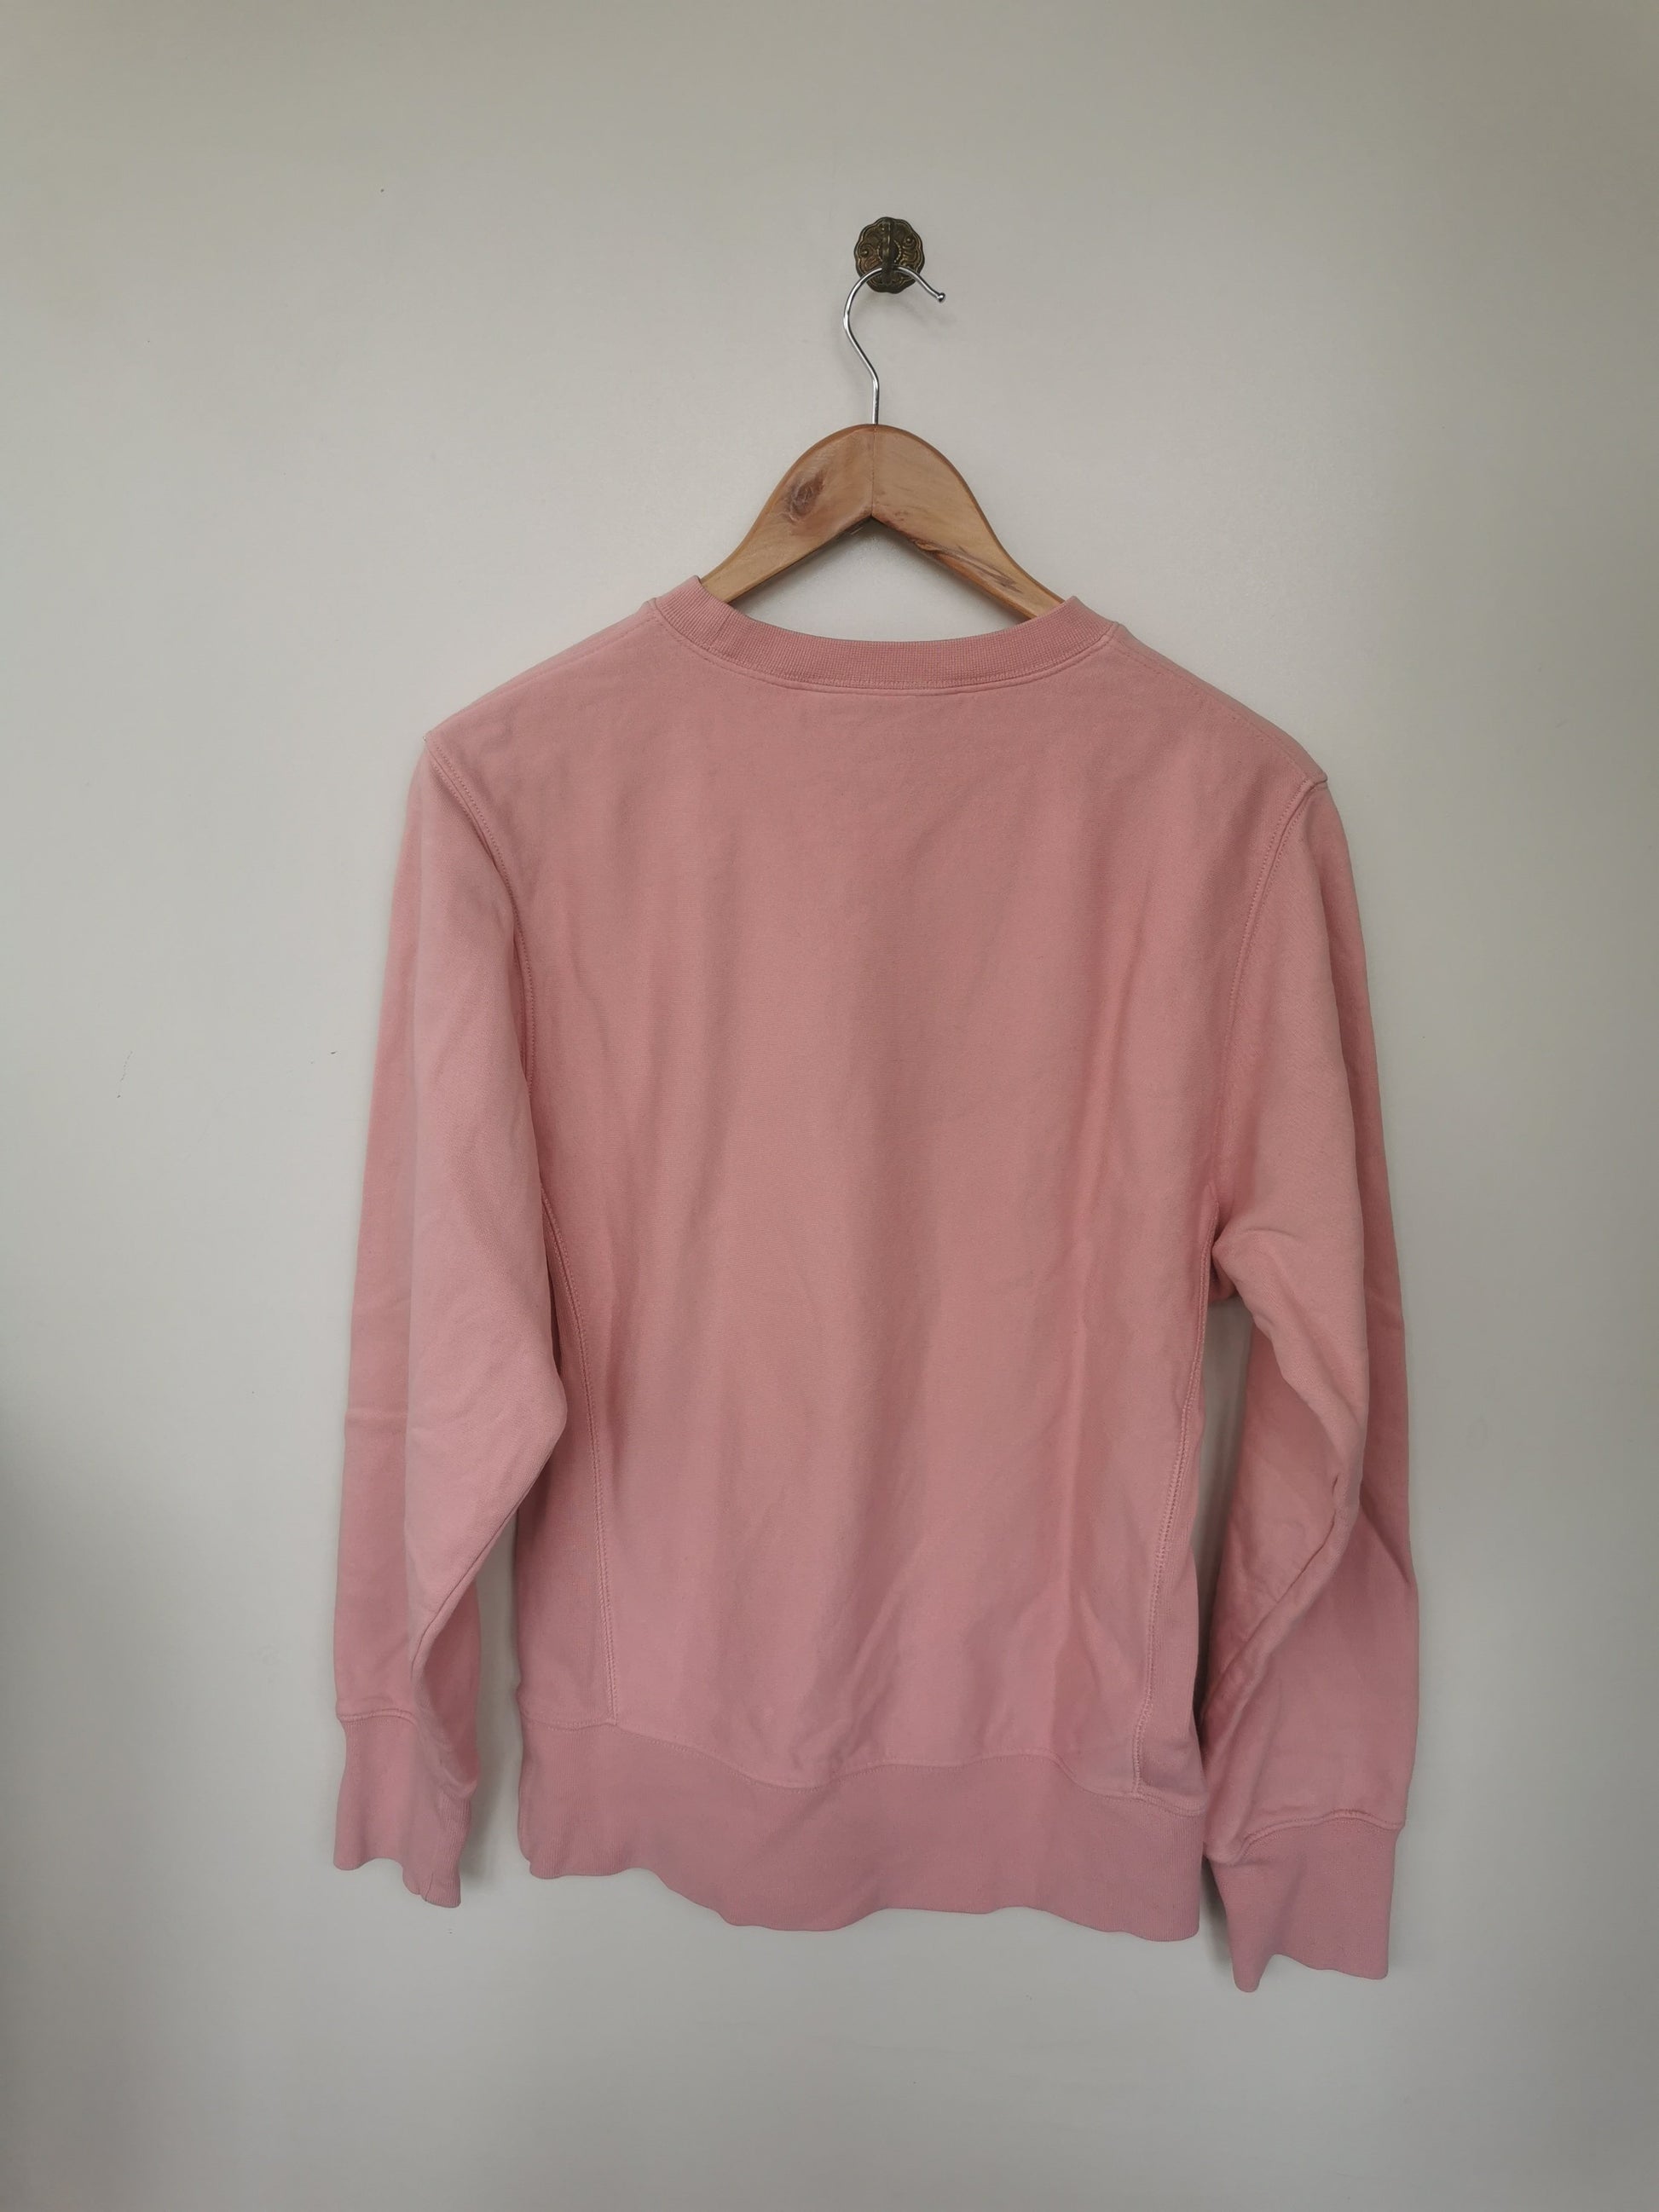 Rosa farbener Pullover / Sweater von Carhartt in L - Wanderlich Second Hand